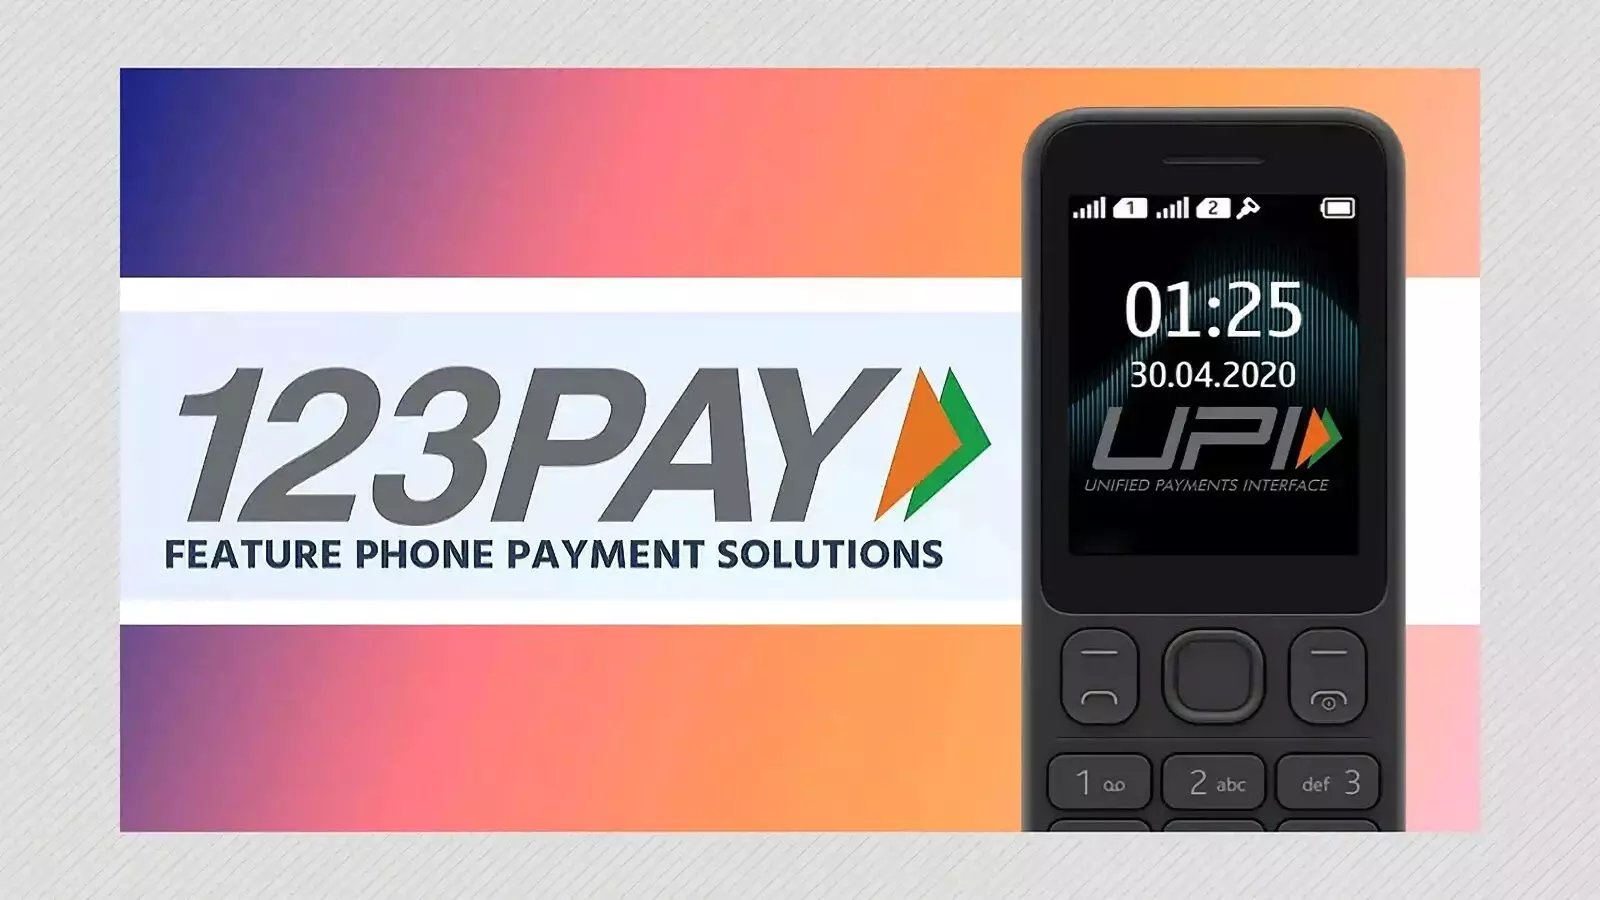 UPI123Pay: RBI का UPI123Pay जो बिना इंटरनेट के गैर स्मार्टफोन में भी पेमेंट ऑप्शन देता है, अब क्रांति होगी